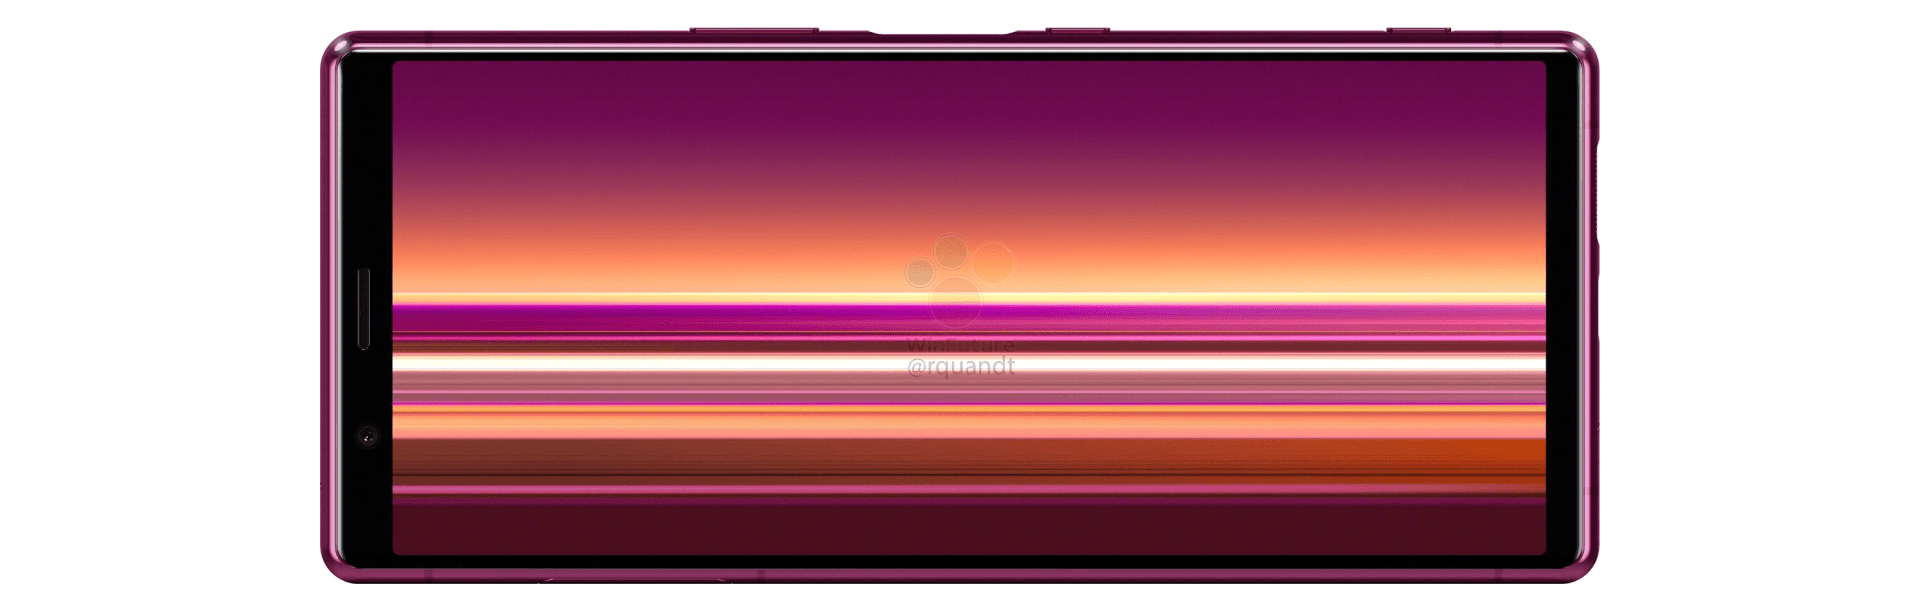 Sony Xperia 2 rendery plotki przecieki wycieki kiedy premiera specyfikacja techniczna IFA 2019